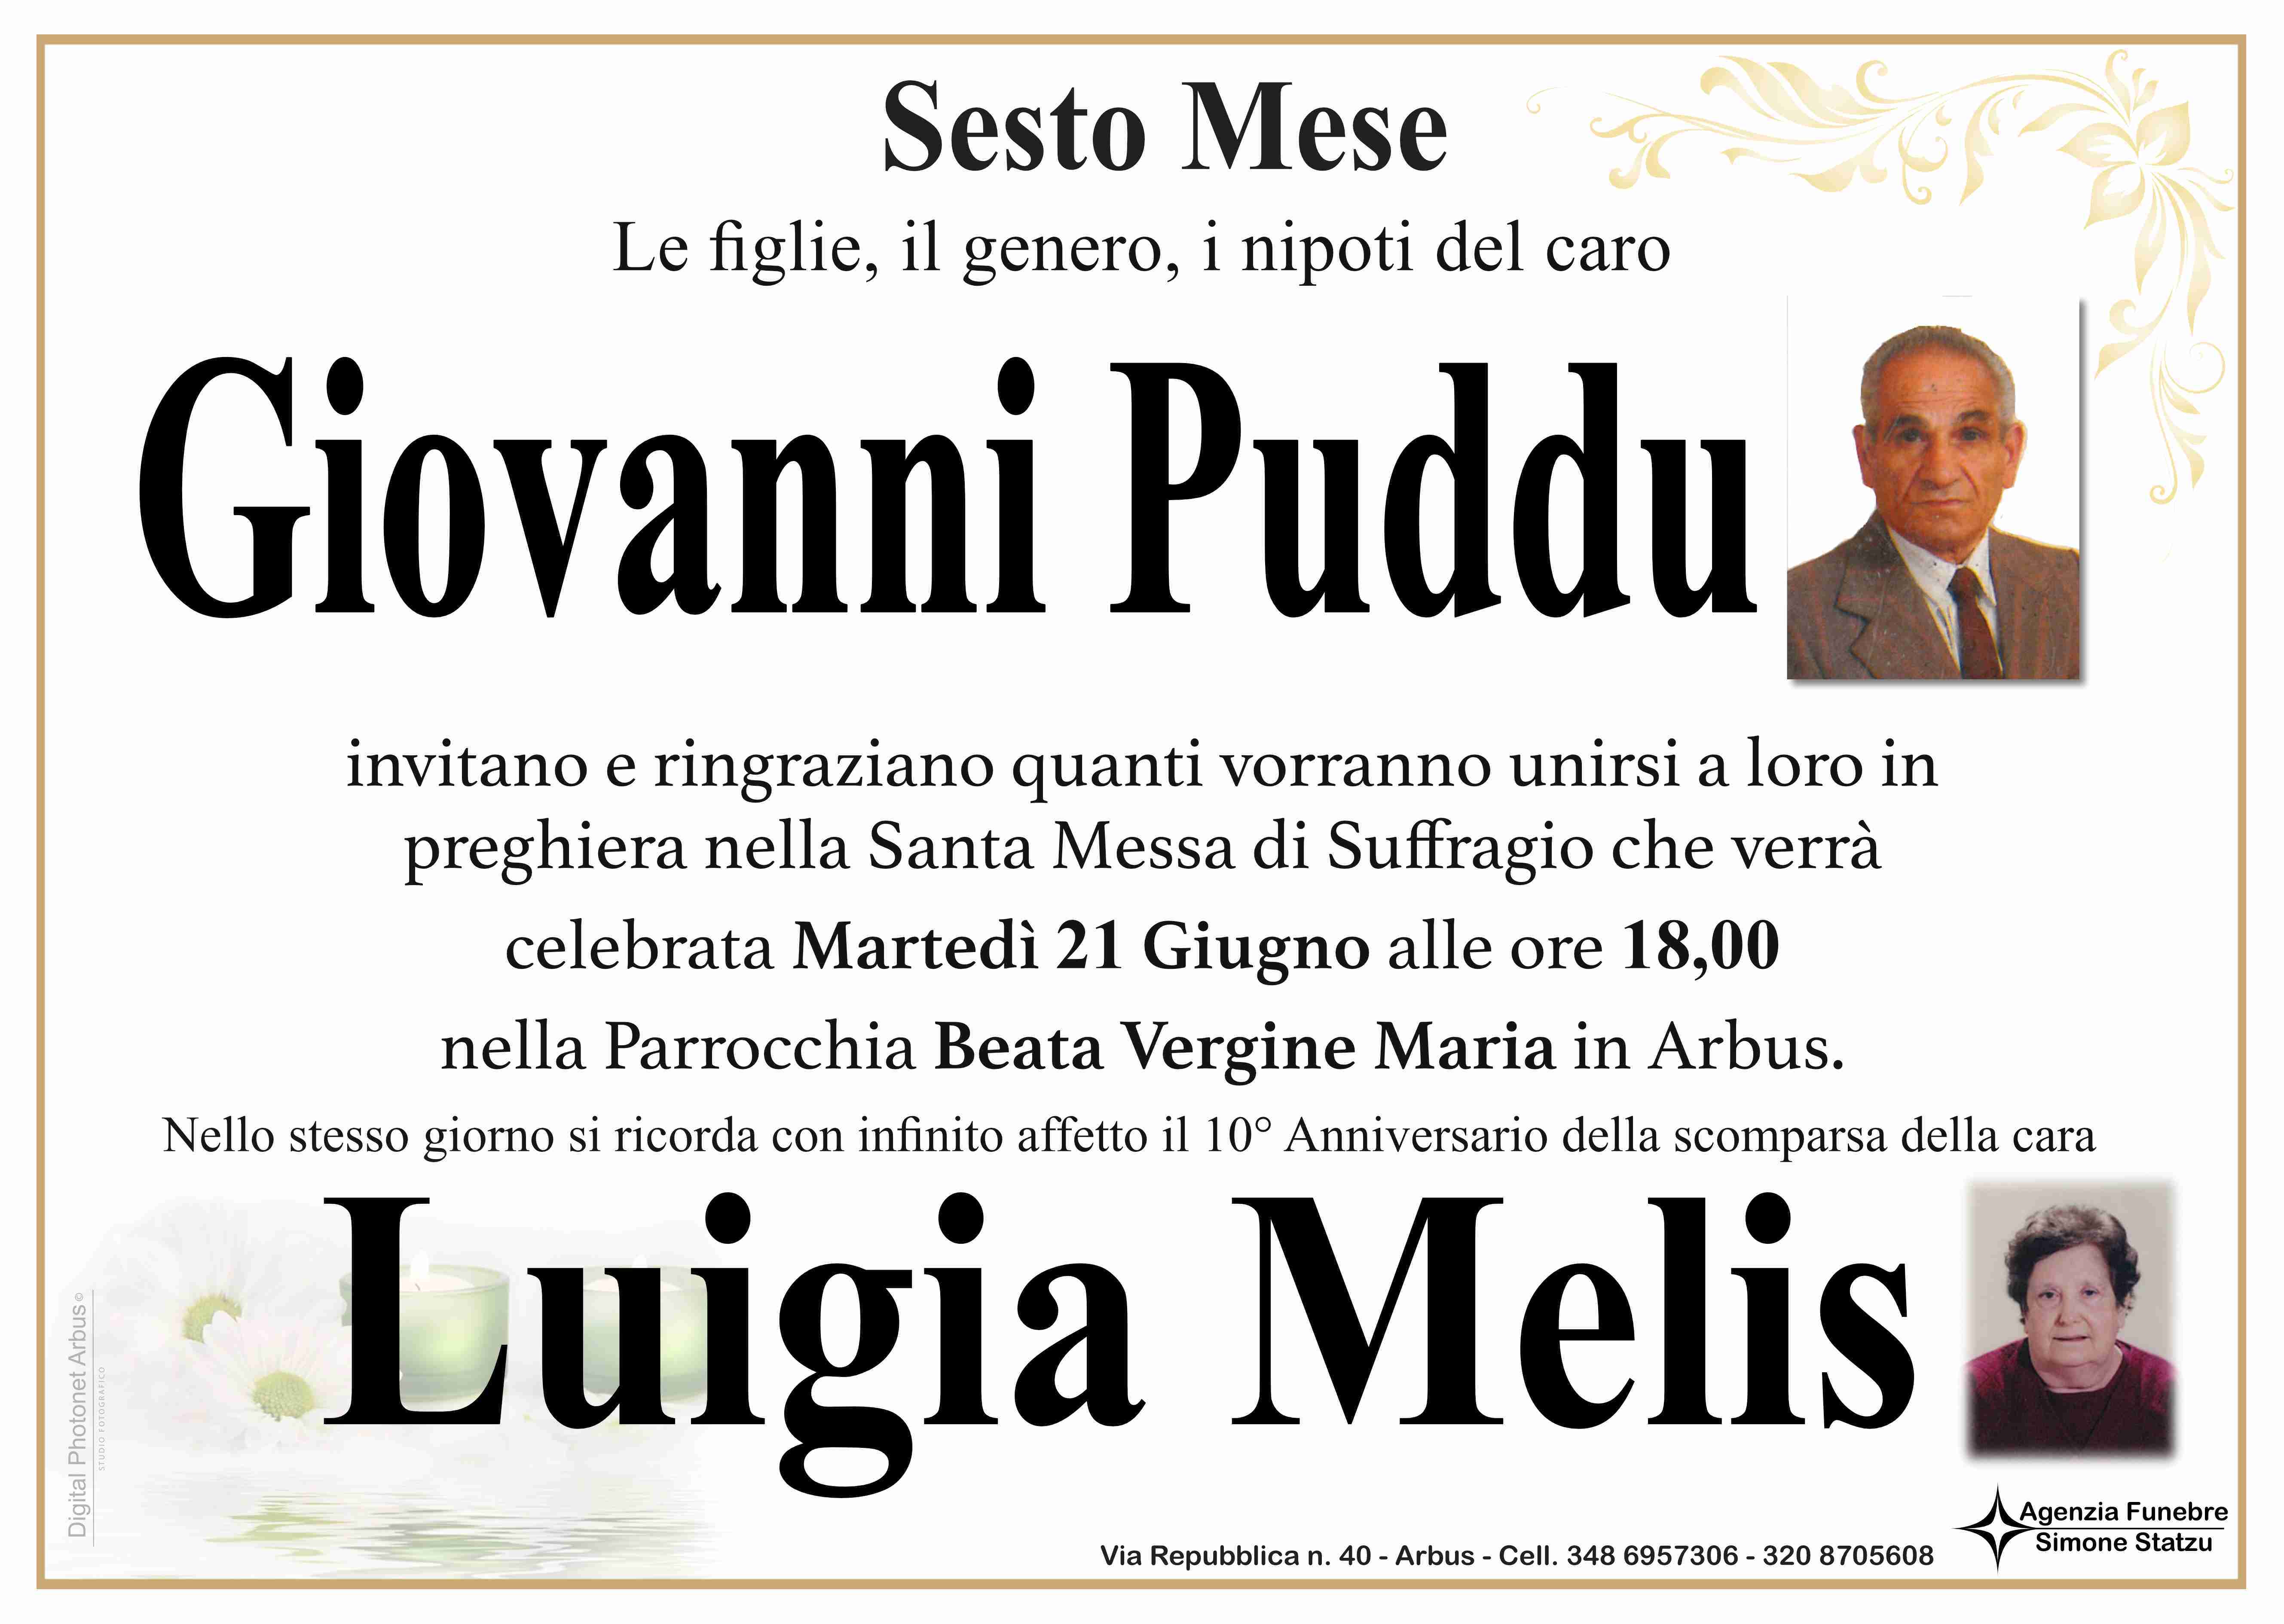 Giovanni Puddu e Luigia Melis